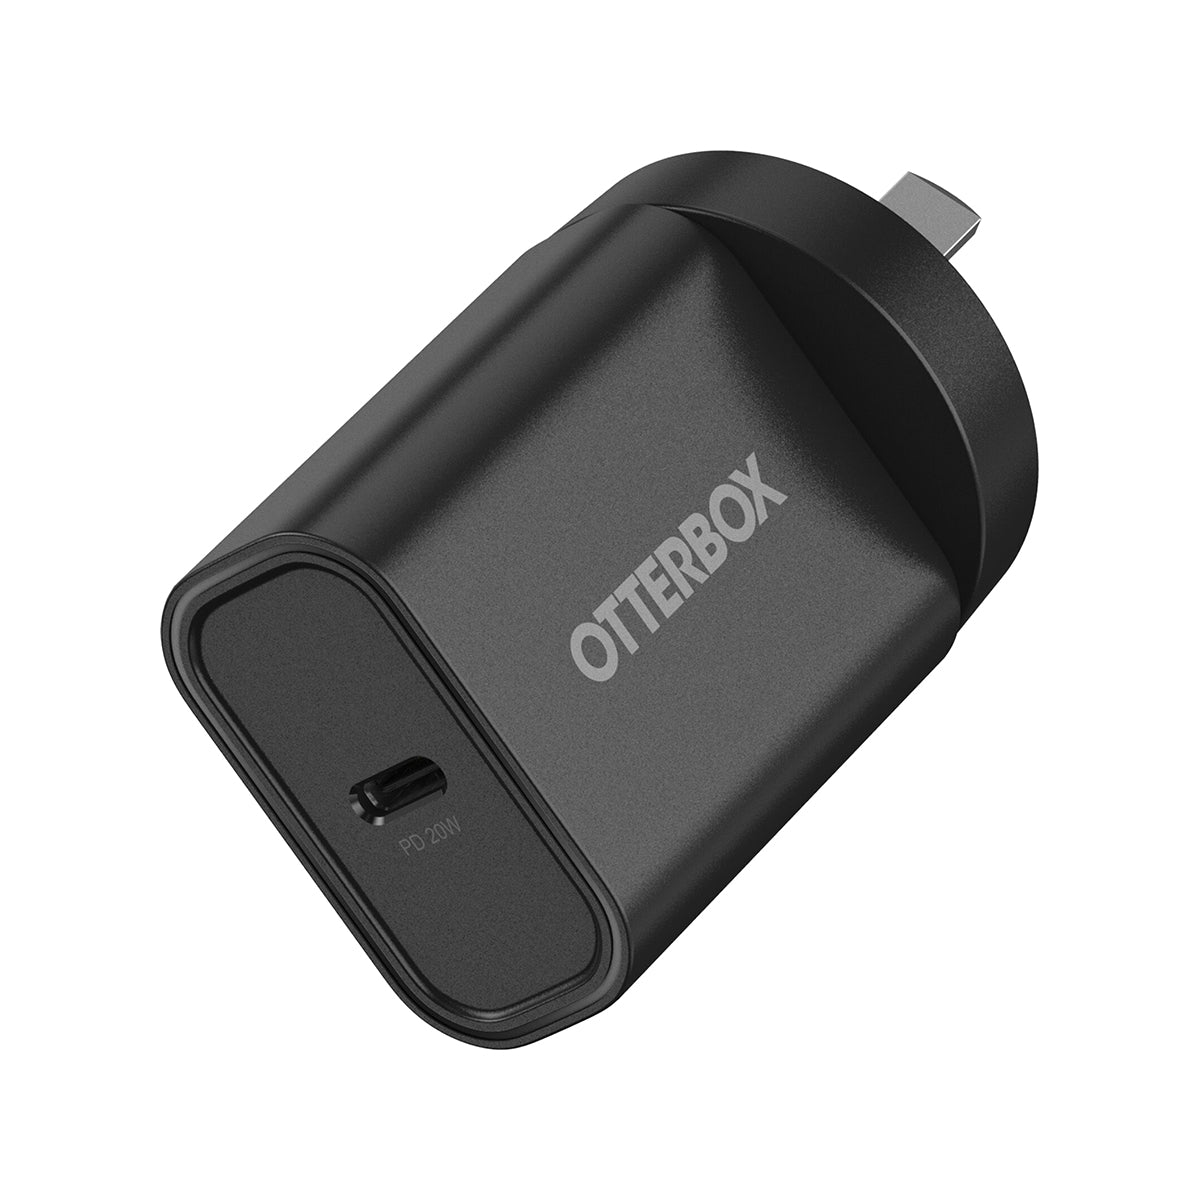 OtterBox Standrd 20W -1X USB-C 20W USB-PD Wall Charger - Black